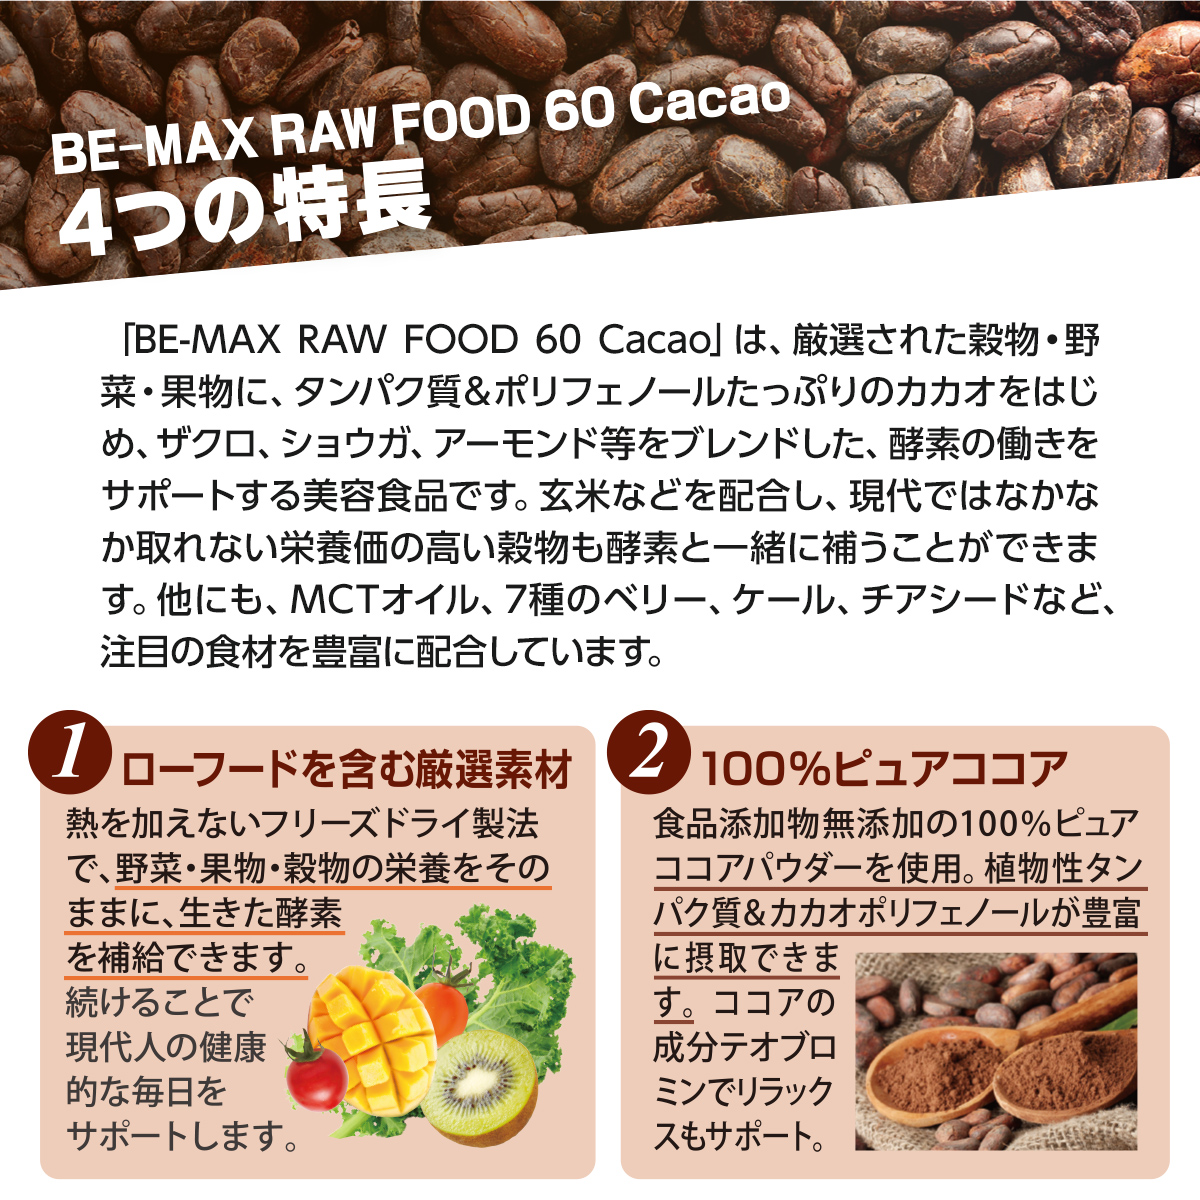 BE-MAX RAW FOOD 60 Cacao（ローフード60カカオ）